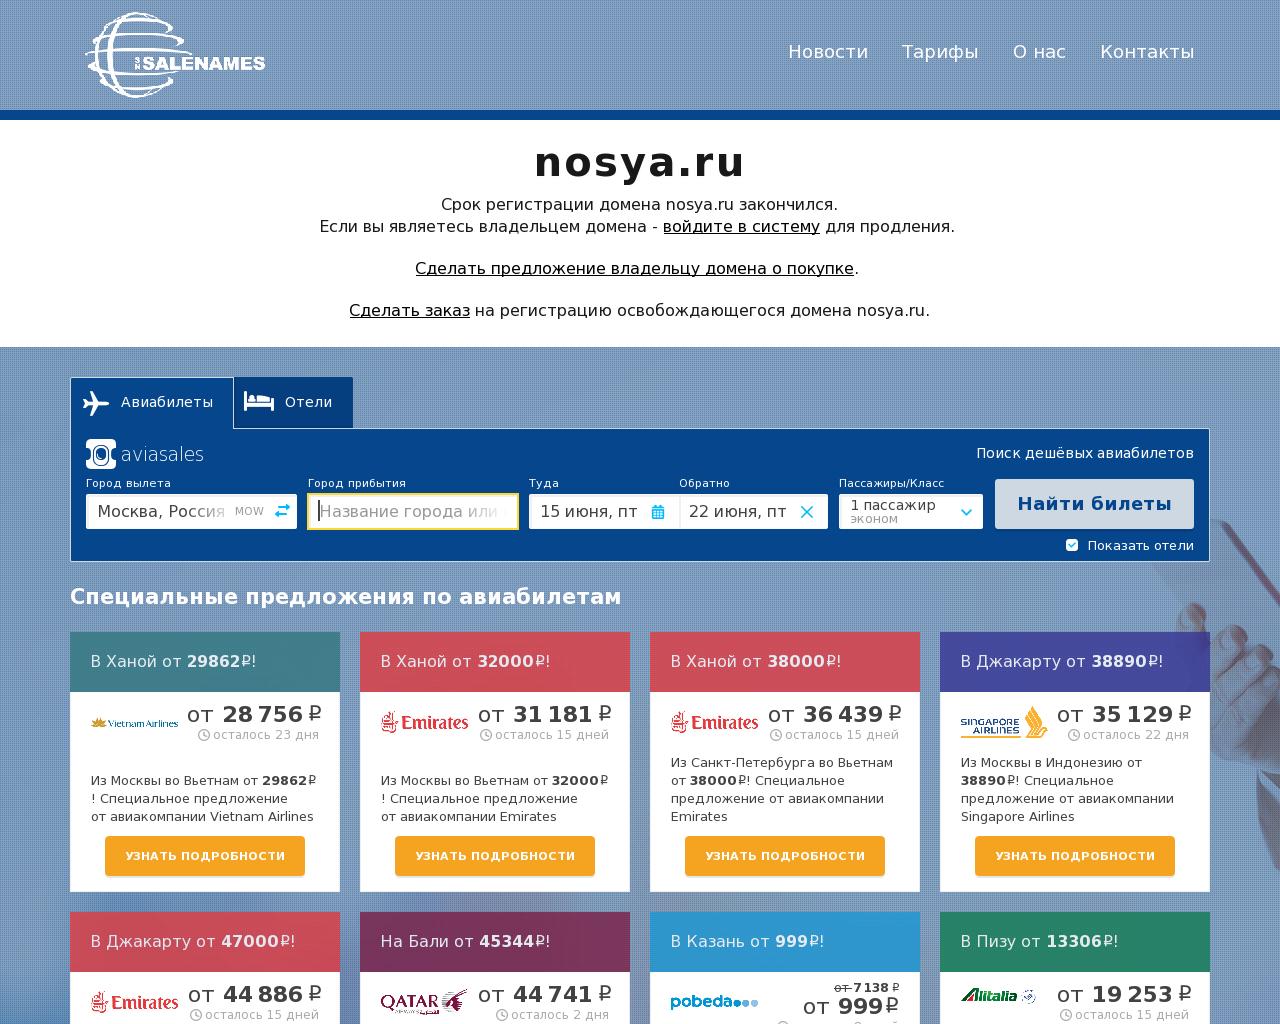 Изображение сайта nosya.ru в разрешении 1280x1024